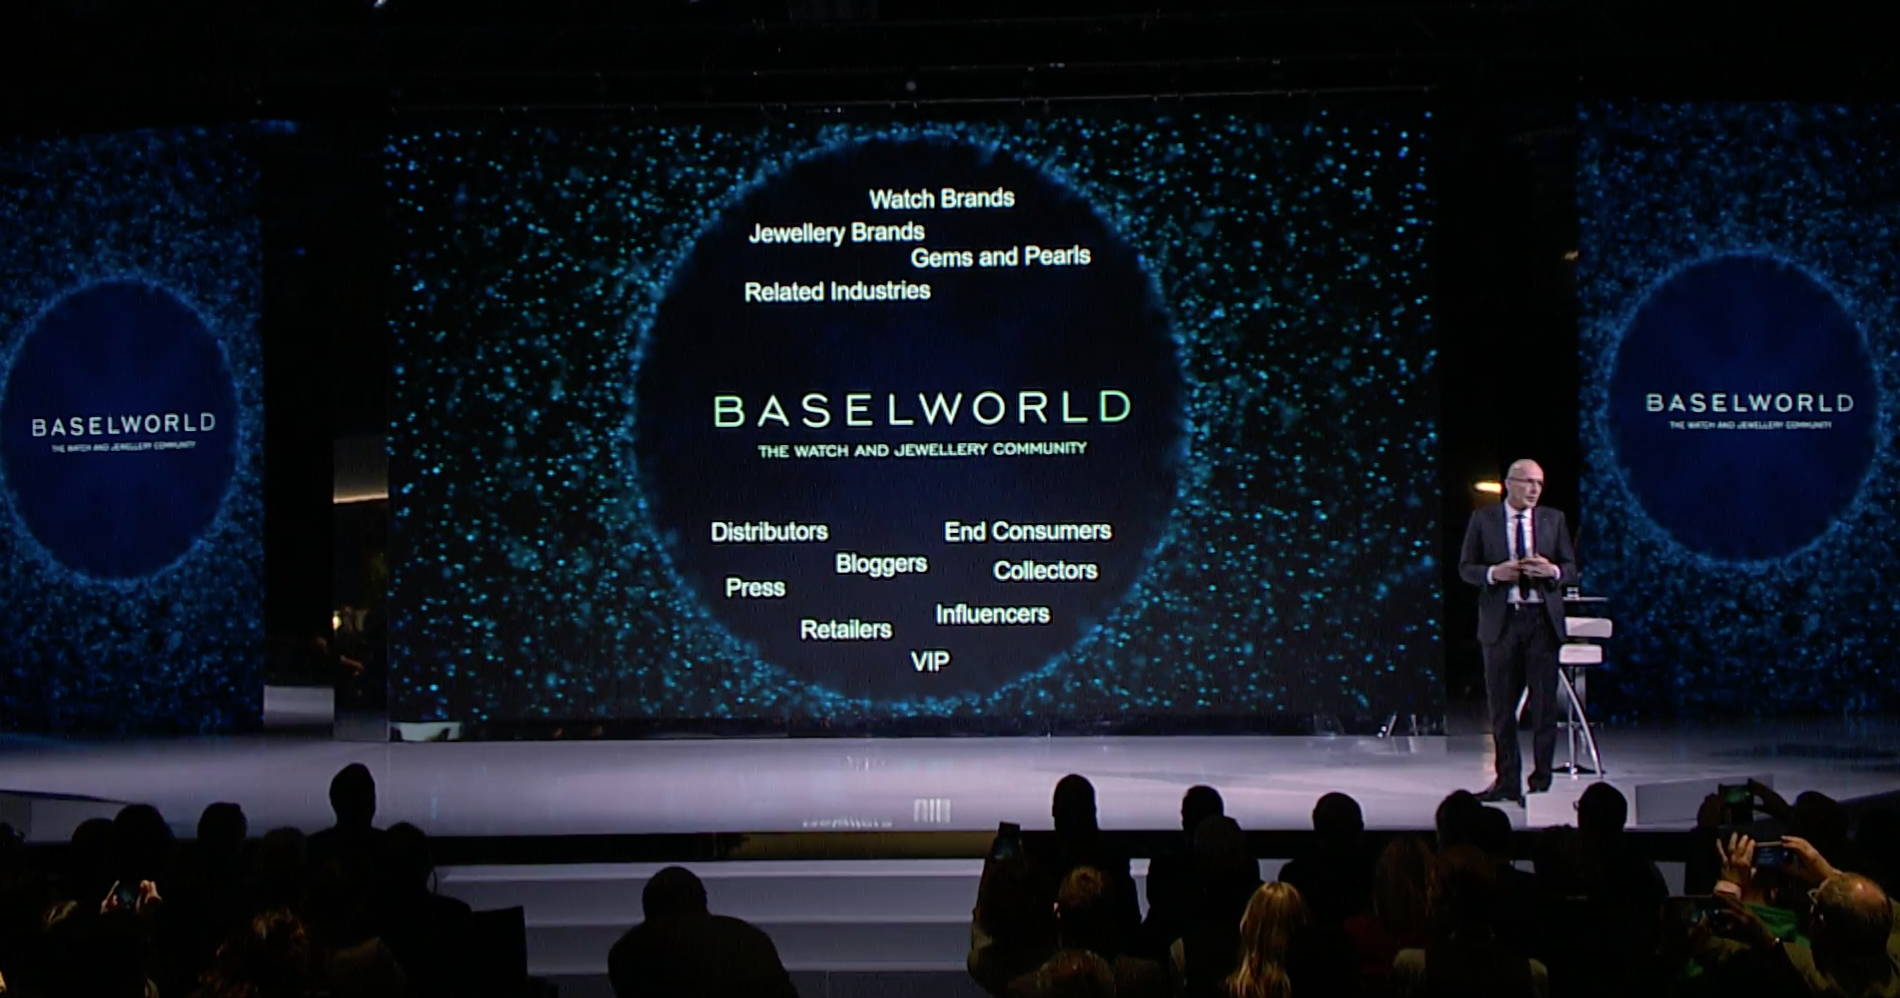 Ab 2020 legt die Baselworld stärkeren Fokus auf die Digitalisierung.